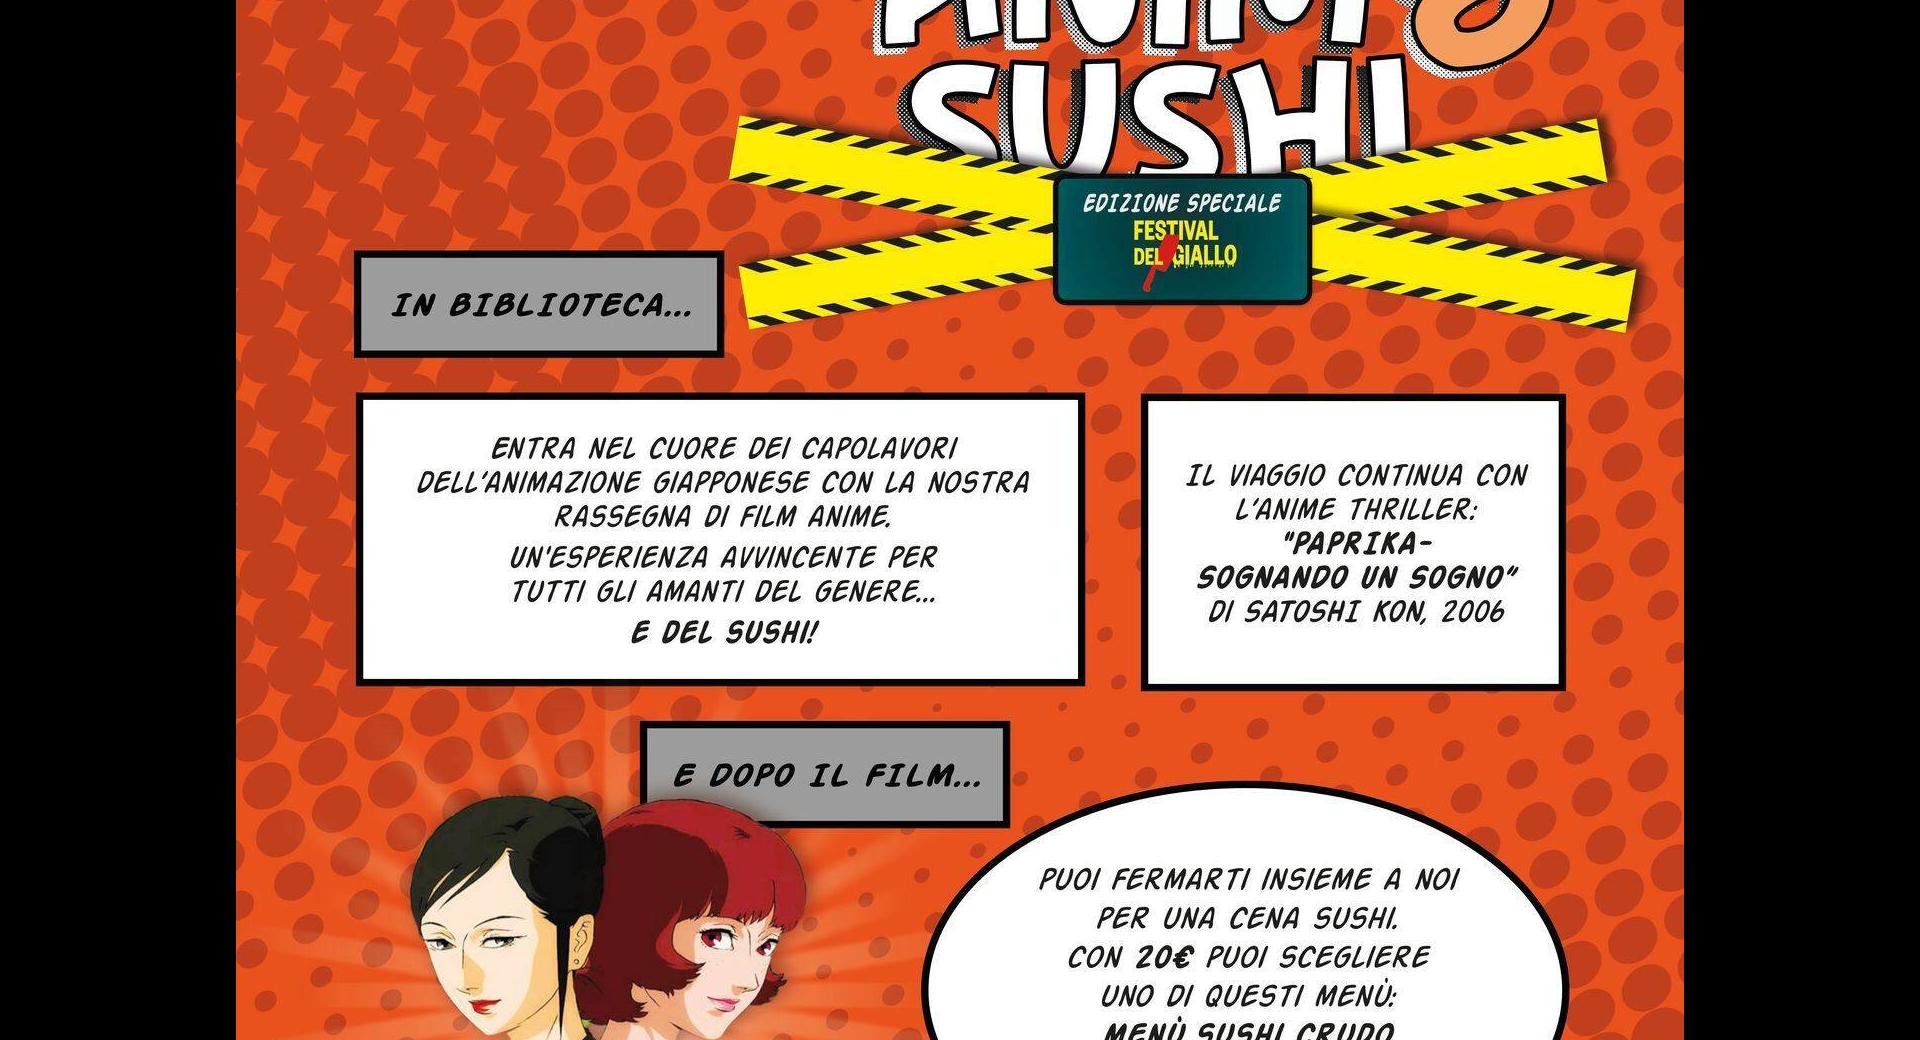 Anime e Sushi 19 04 24